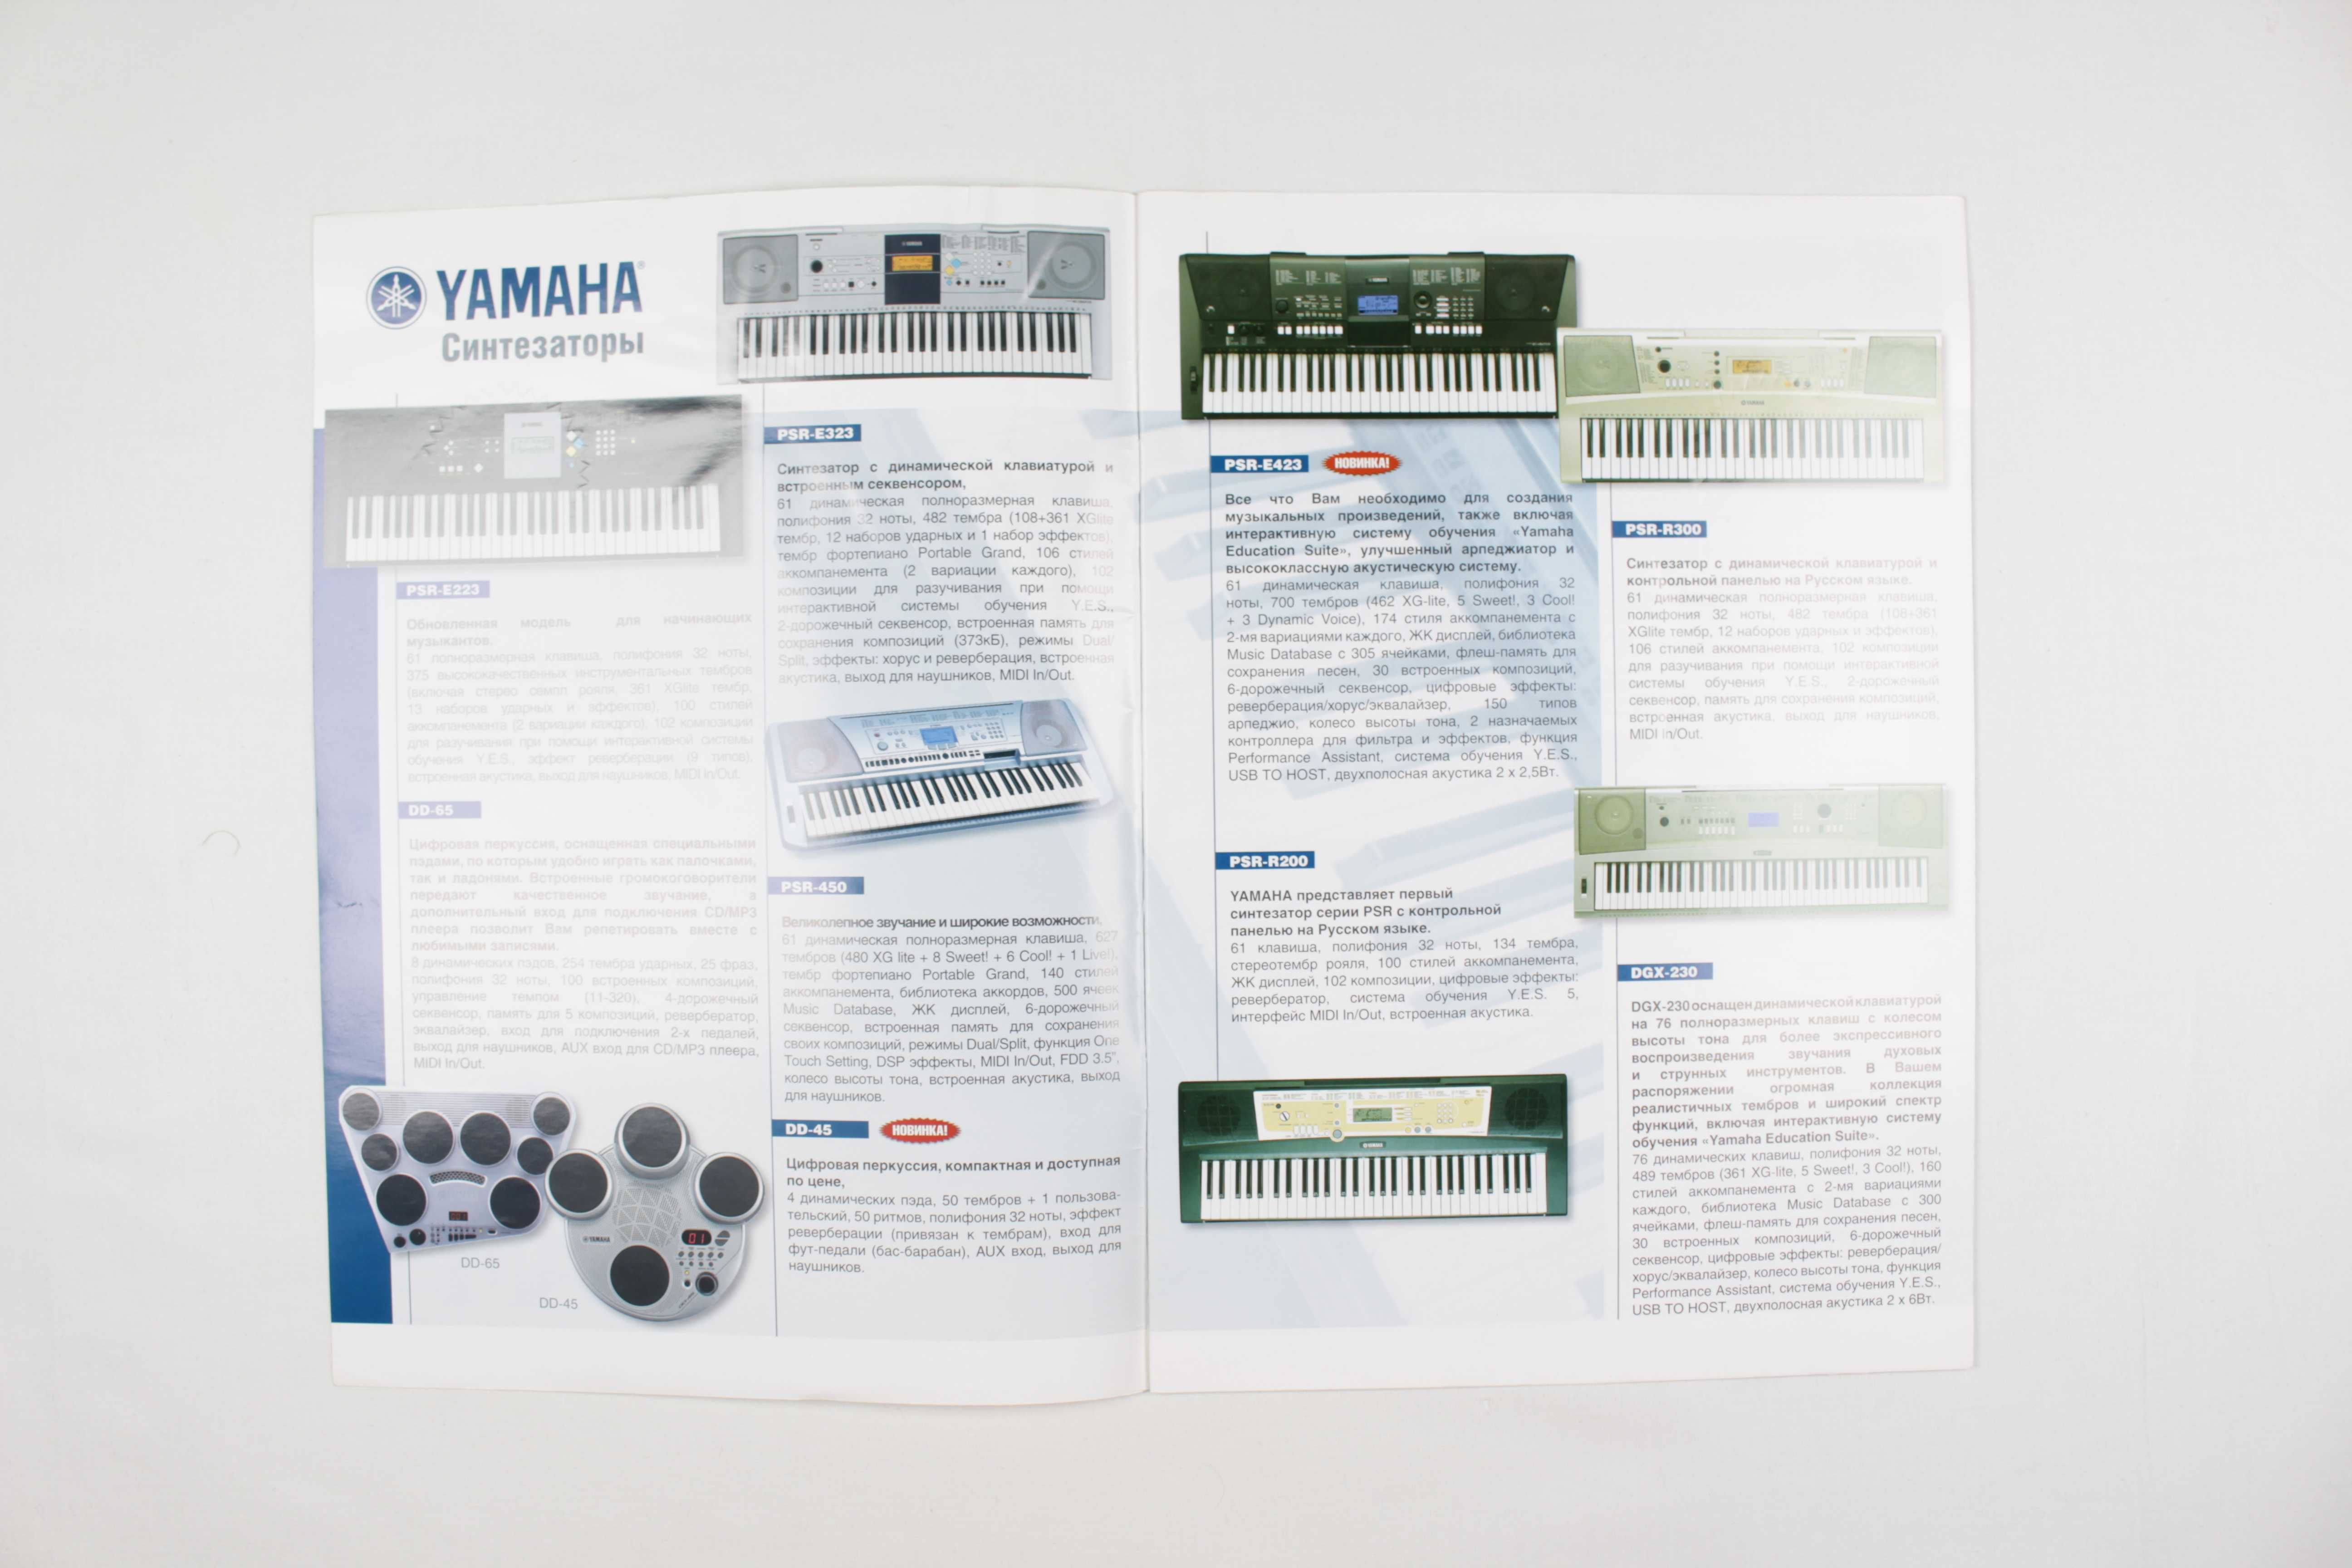 Музыкальный каталог - журнал YAMAHA - Клавишные инструменты 2010